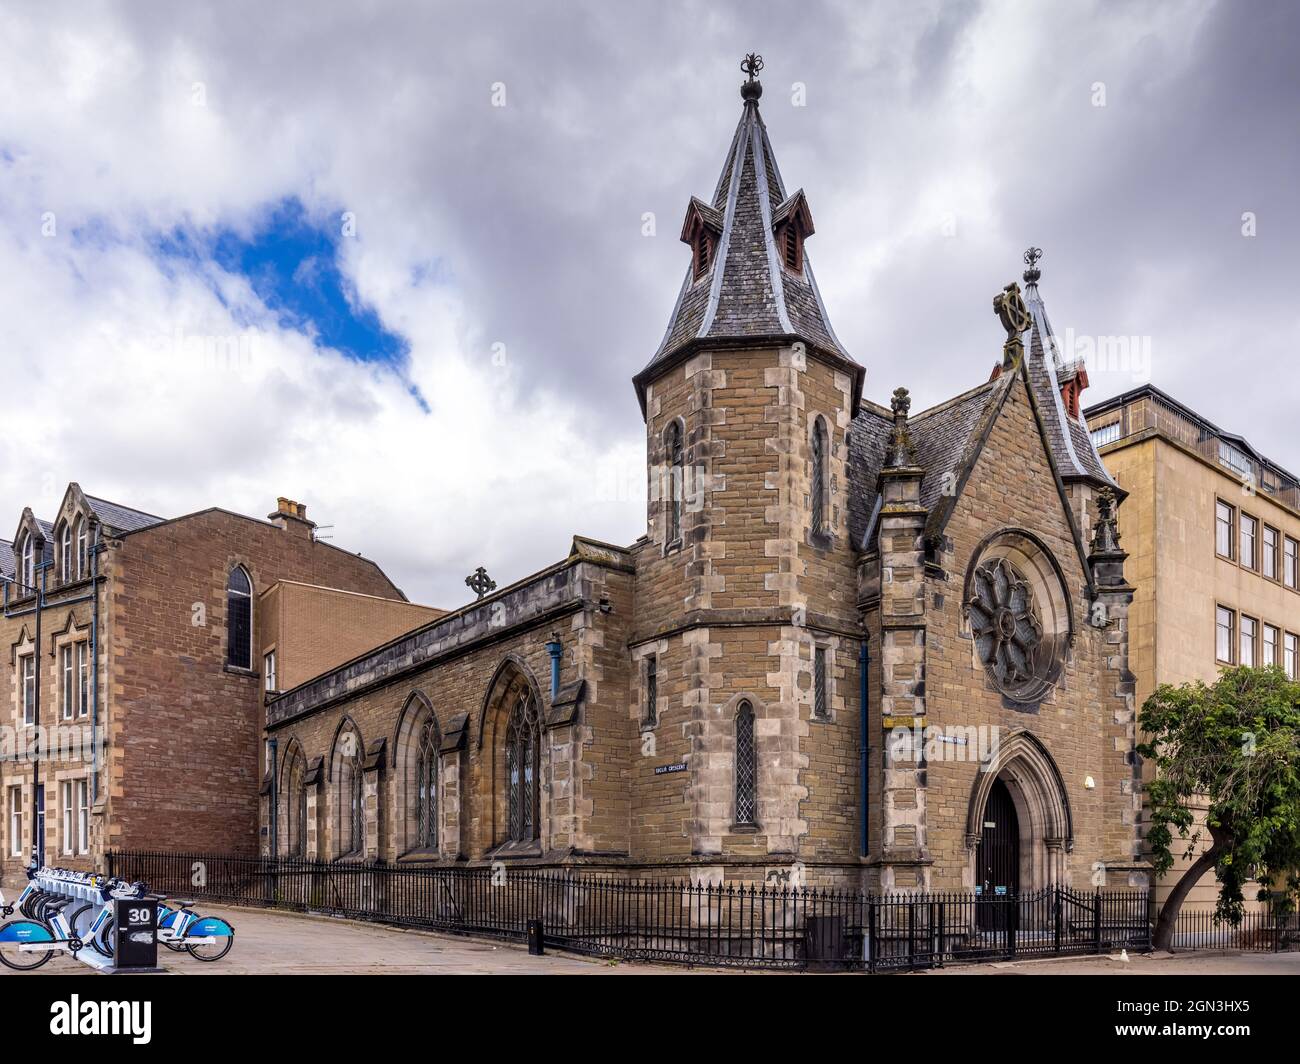 Die alte Congregational Church in der Panmure Street, Dundee. Diese ehemalige gotische Kirche wurde 1985 in eine Bibliothek und einen Saal der Dundee High School umgewandelt. Stockfoto